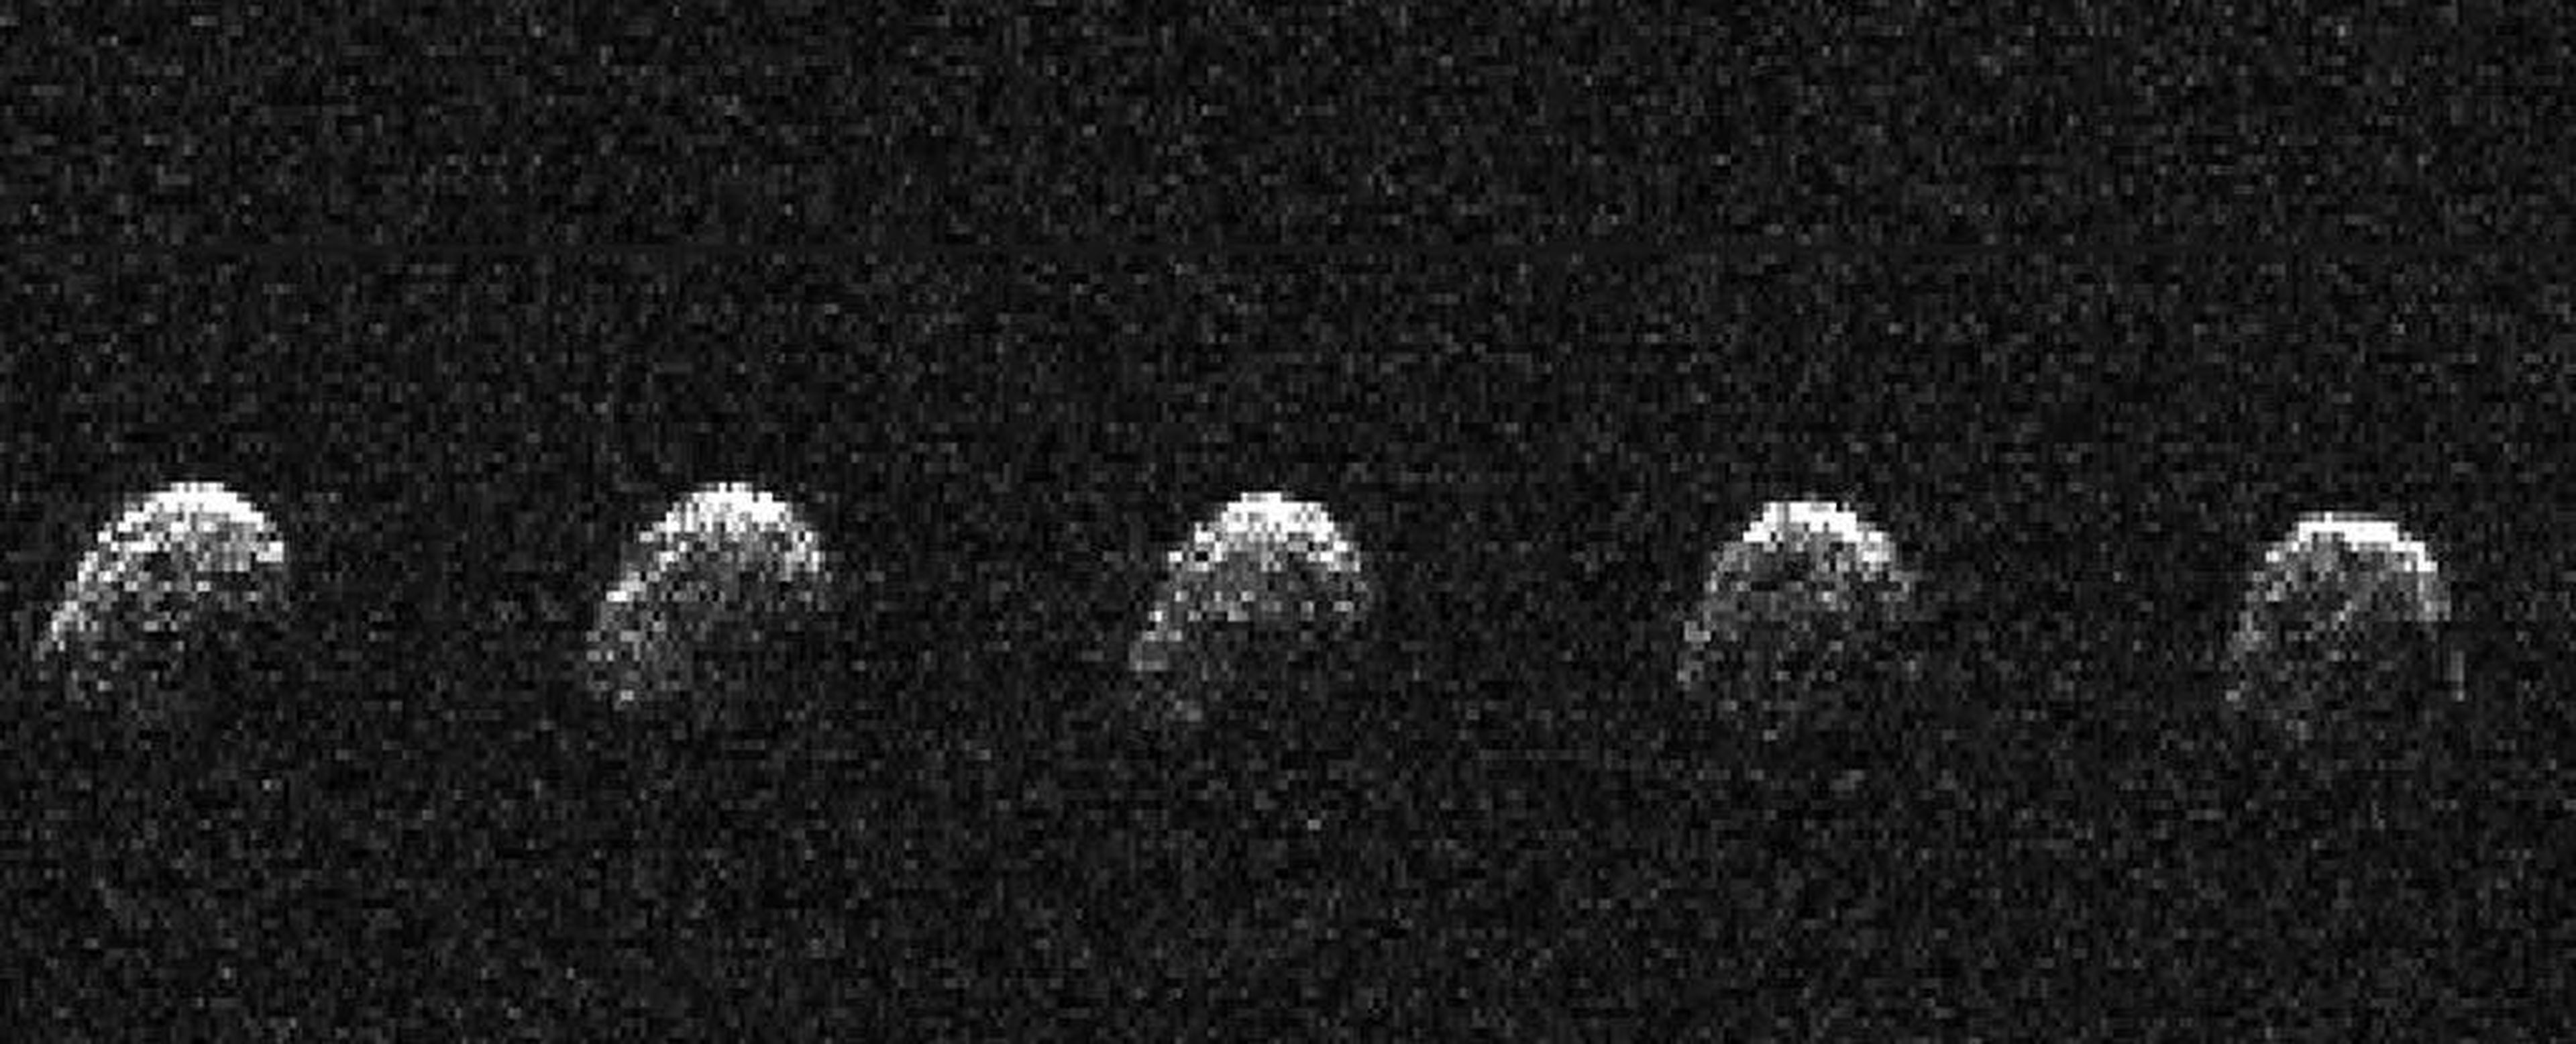 Observaciones del Nereus realizadas mediante el telescopio Arecibo en 2002.